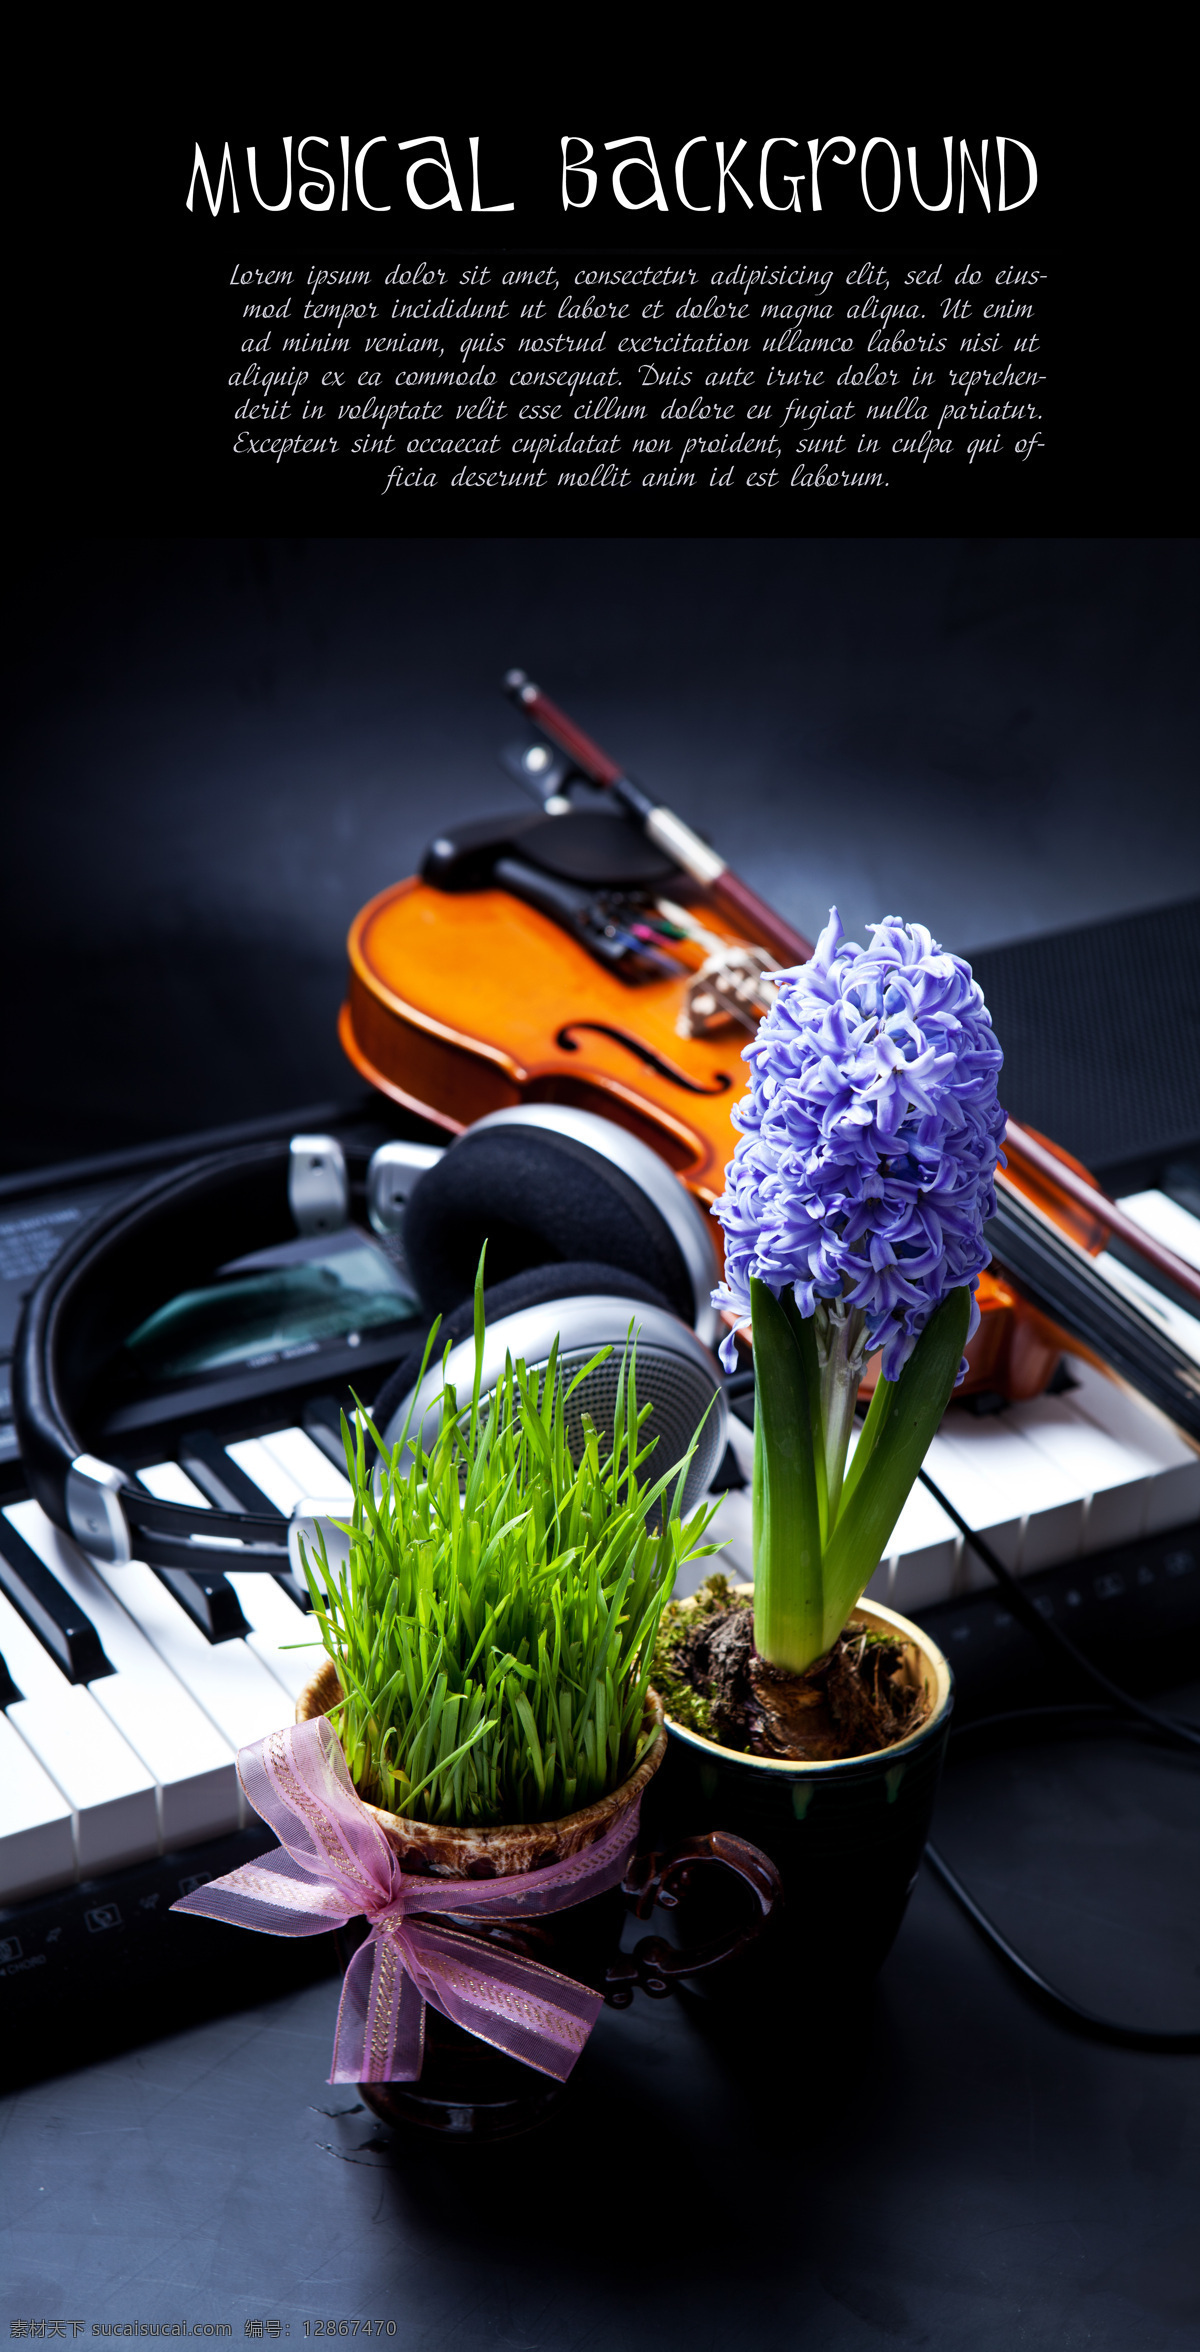 钢琴 绿色植物 小提琴 黑色耳机 乐器 影音娱乐 生活百科